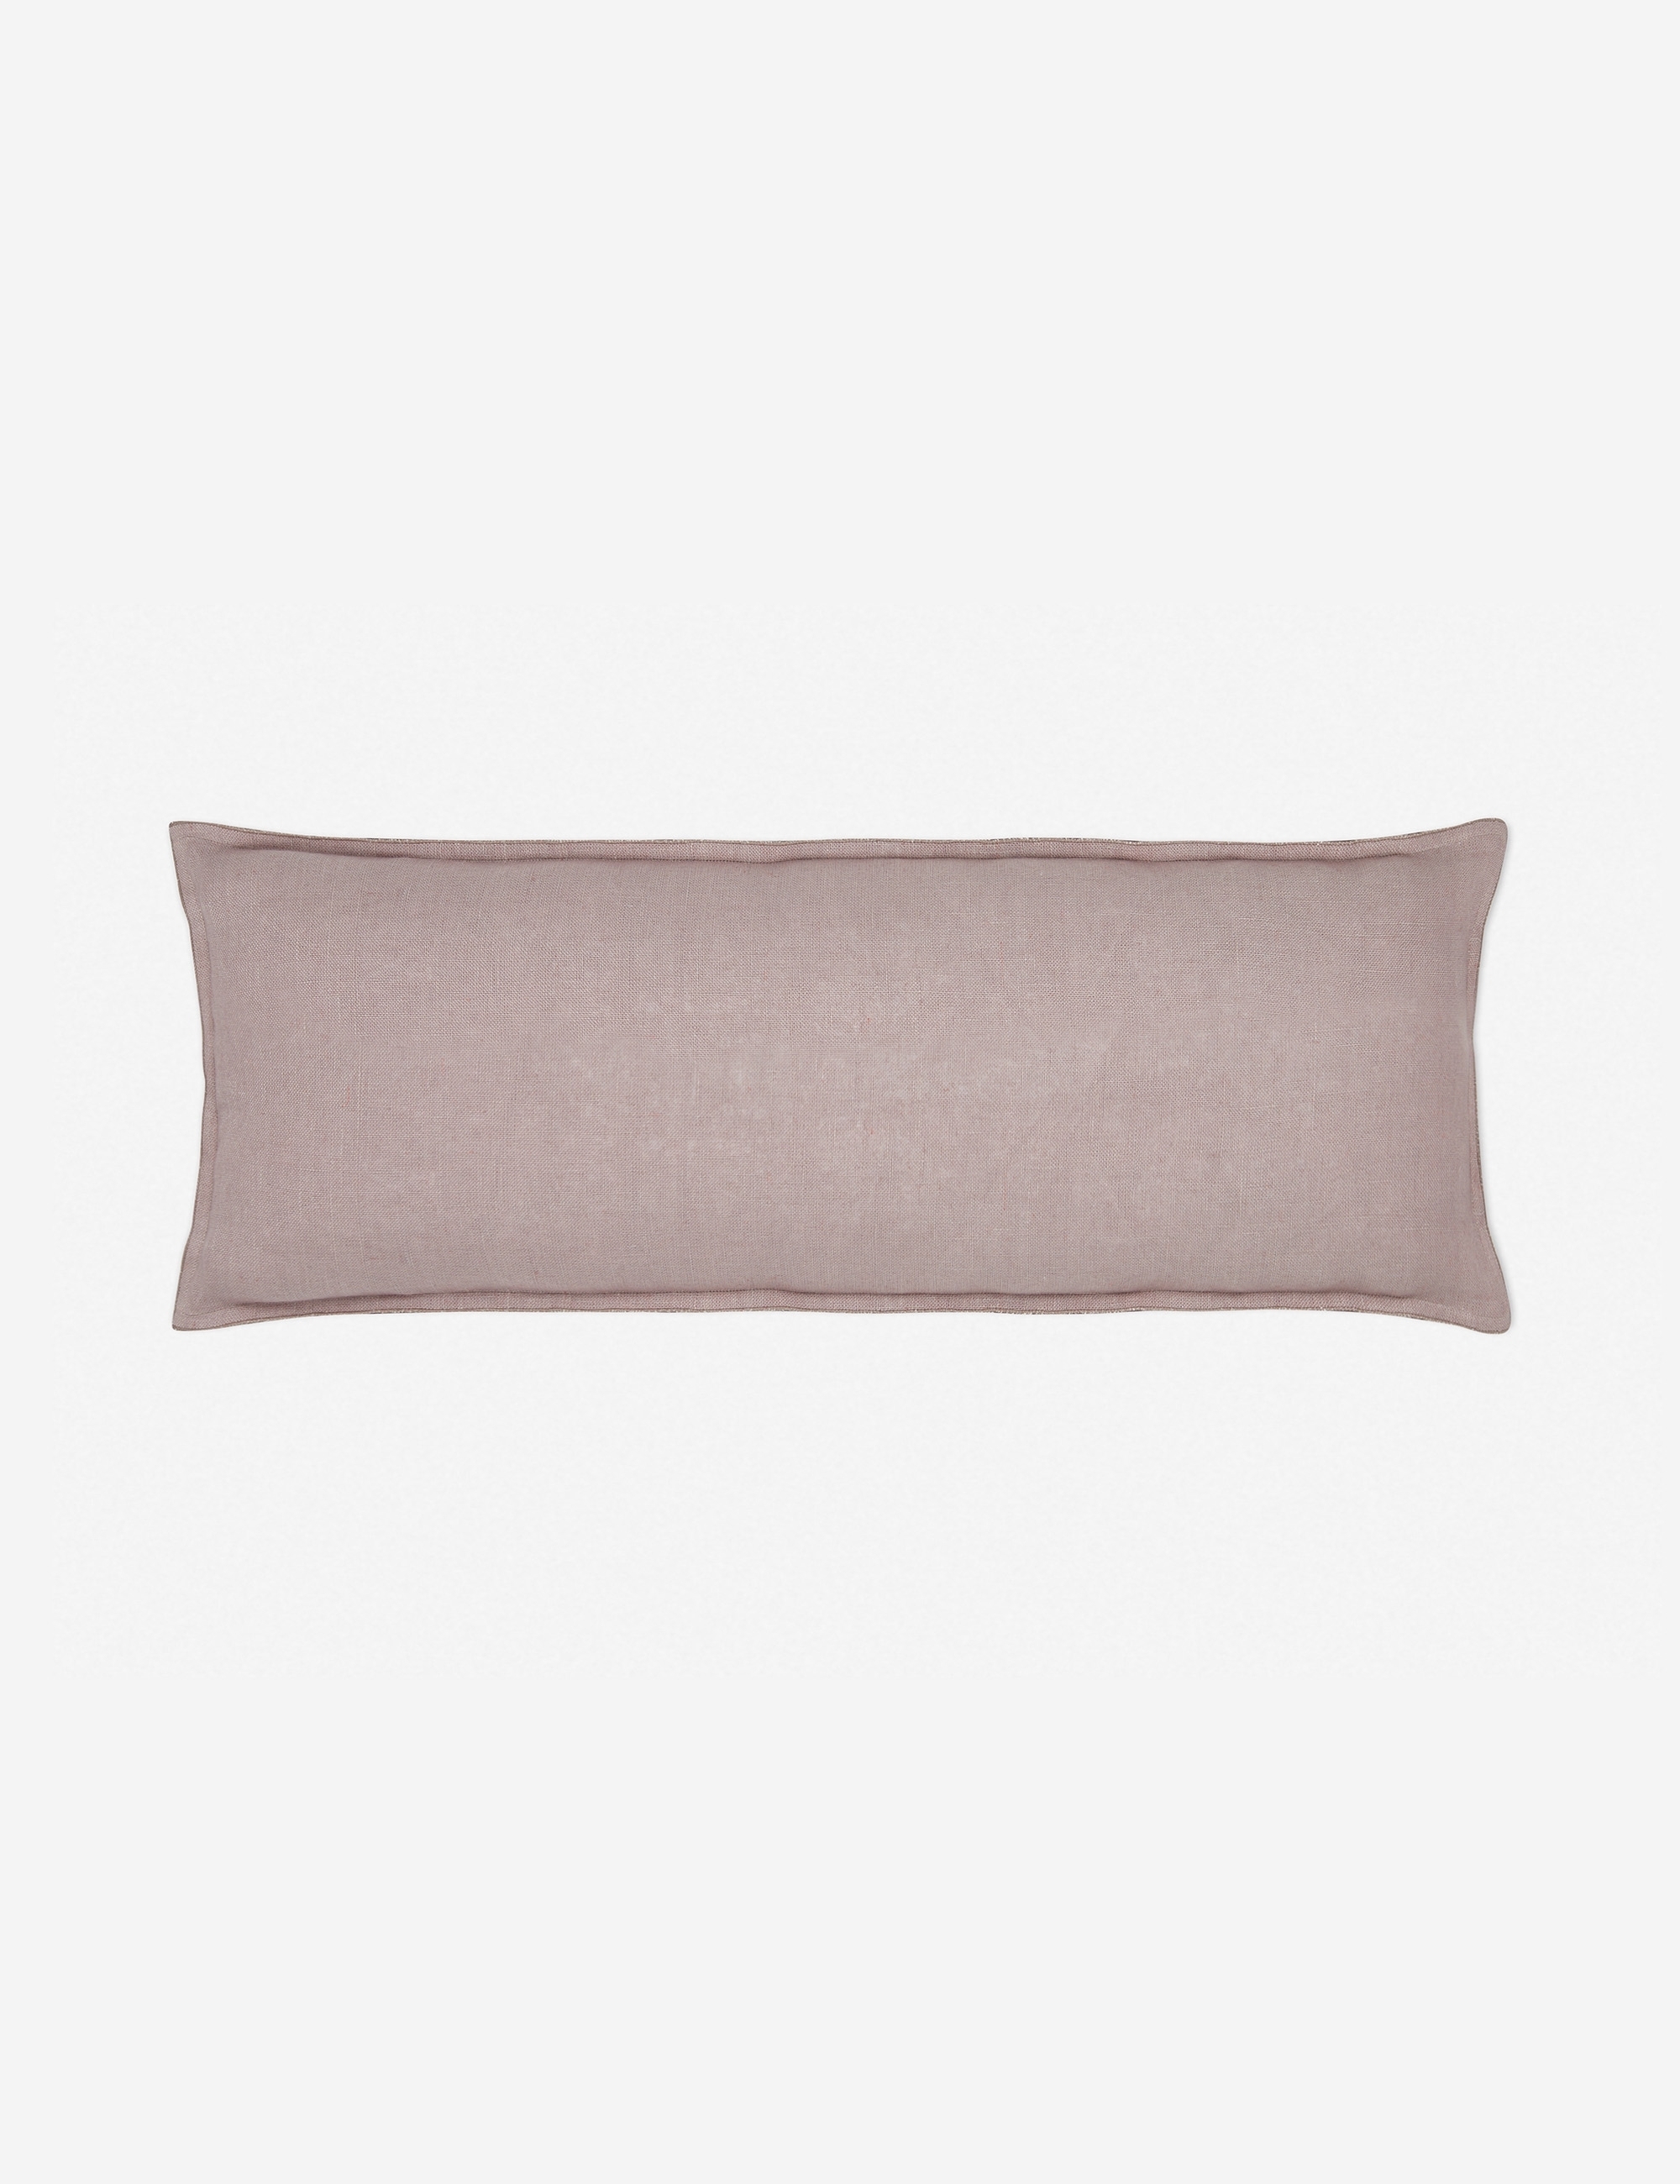 Arlo Linen Long Lumbar Pillow, Dark Natural - Image 0